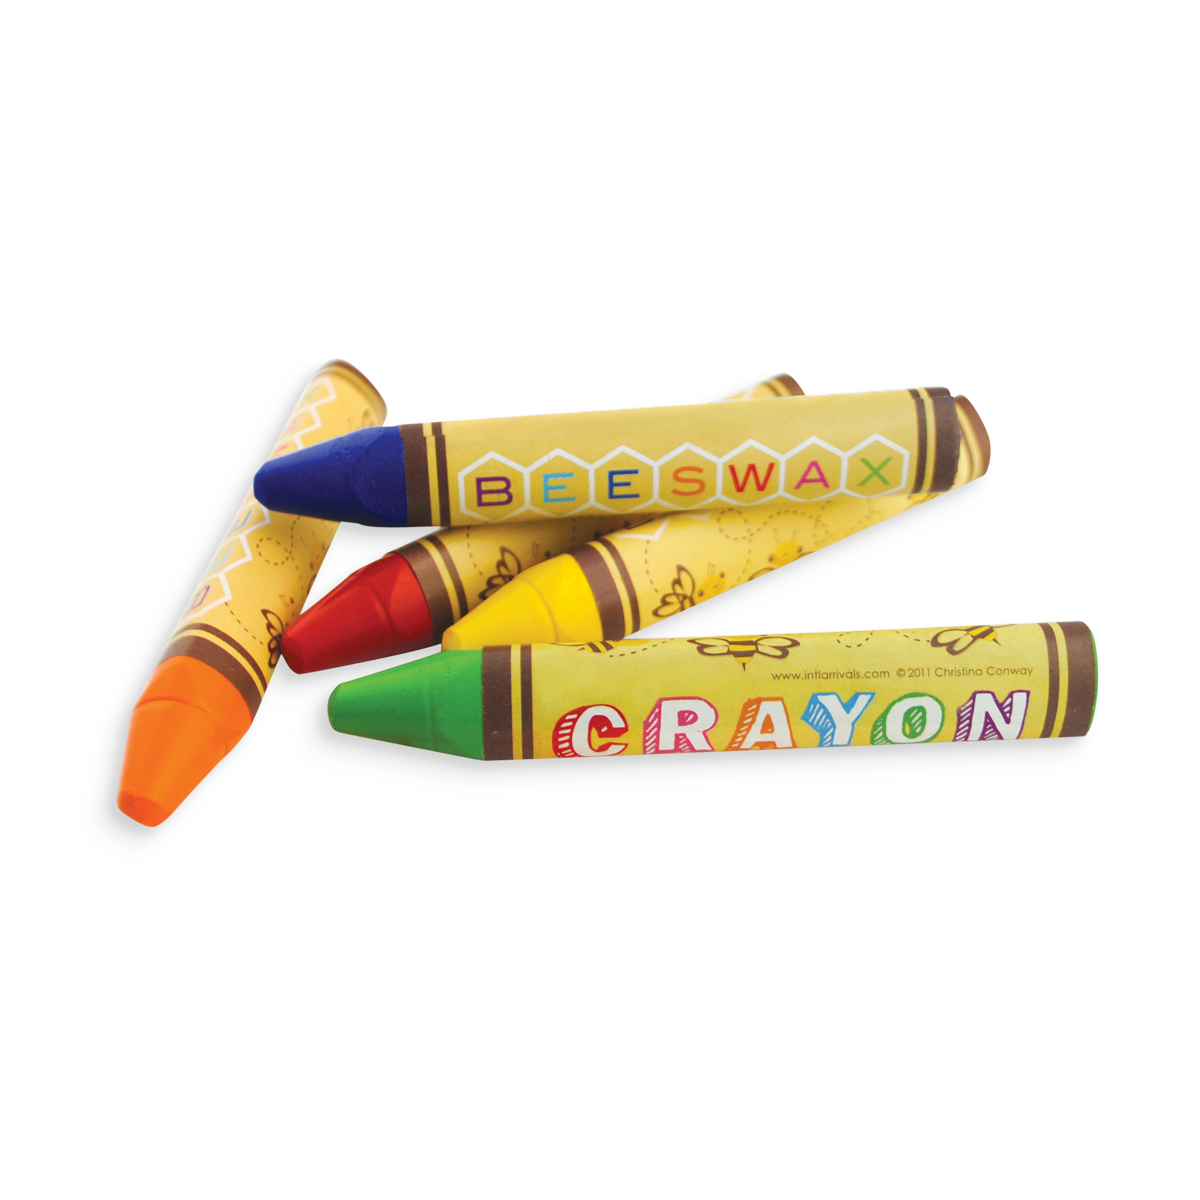 OOLY Brilliant Bee Crayons Crayons